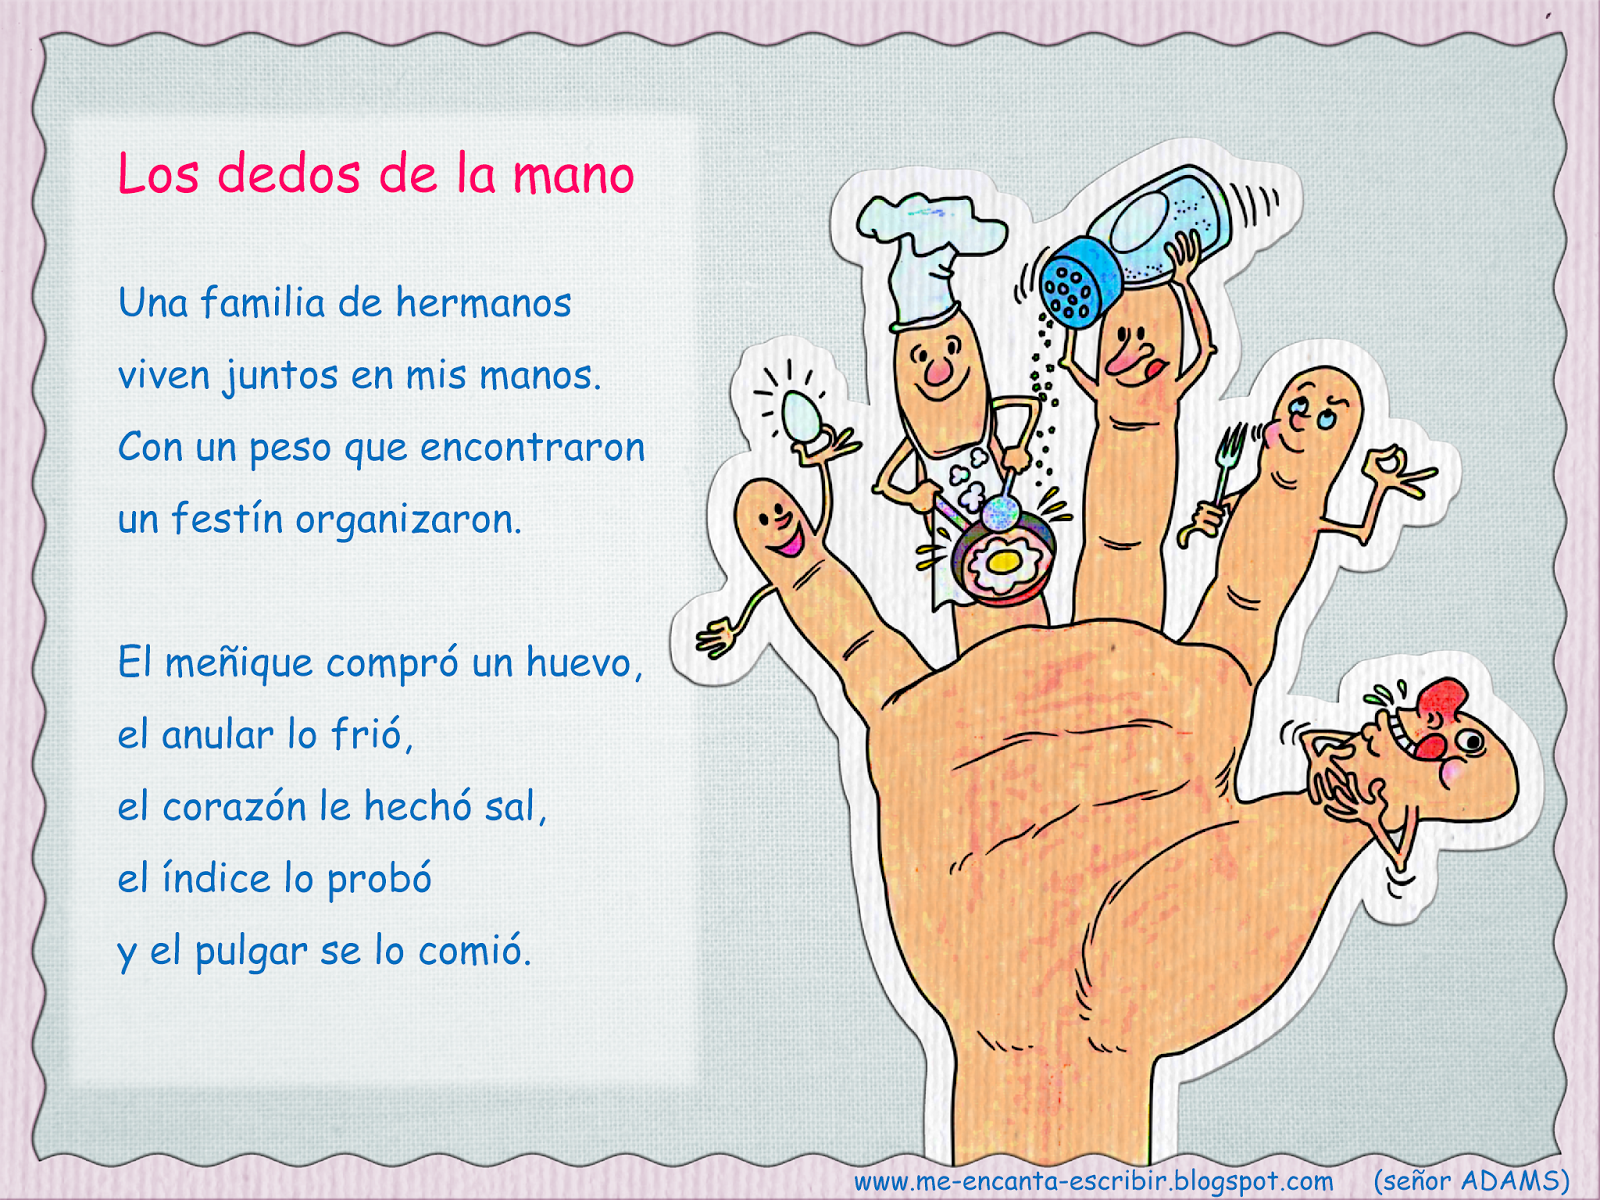 Me encanta escribir en español: Los dedos de la mano.